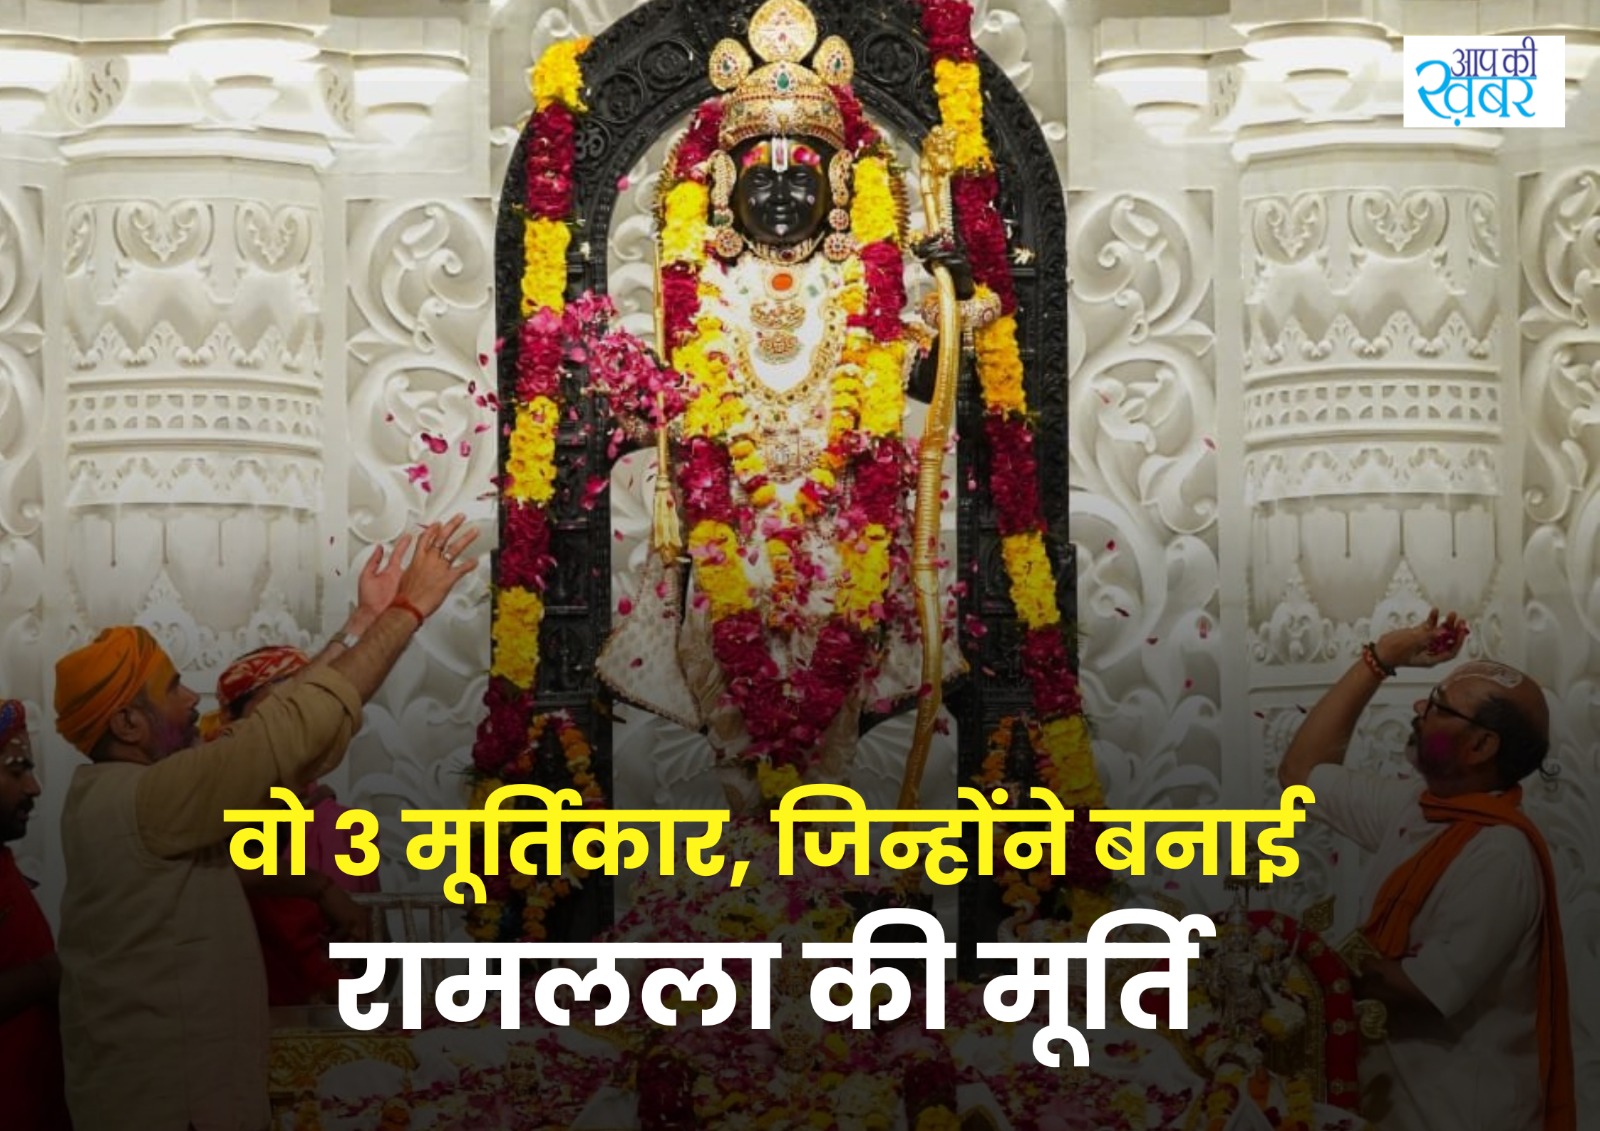 Ayodhya Ram Mandir Murti : कौन हैं वो 3 मूर्तिकार, जिन्होंने अयोध्या Ram Mandir के लिए बनाई रामलला की मूर्ति